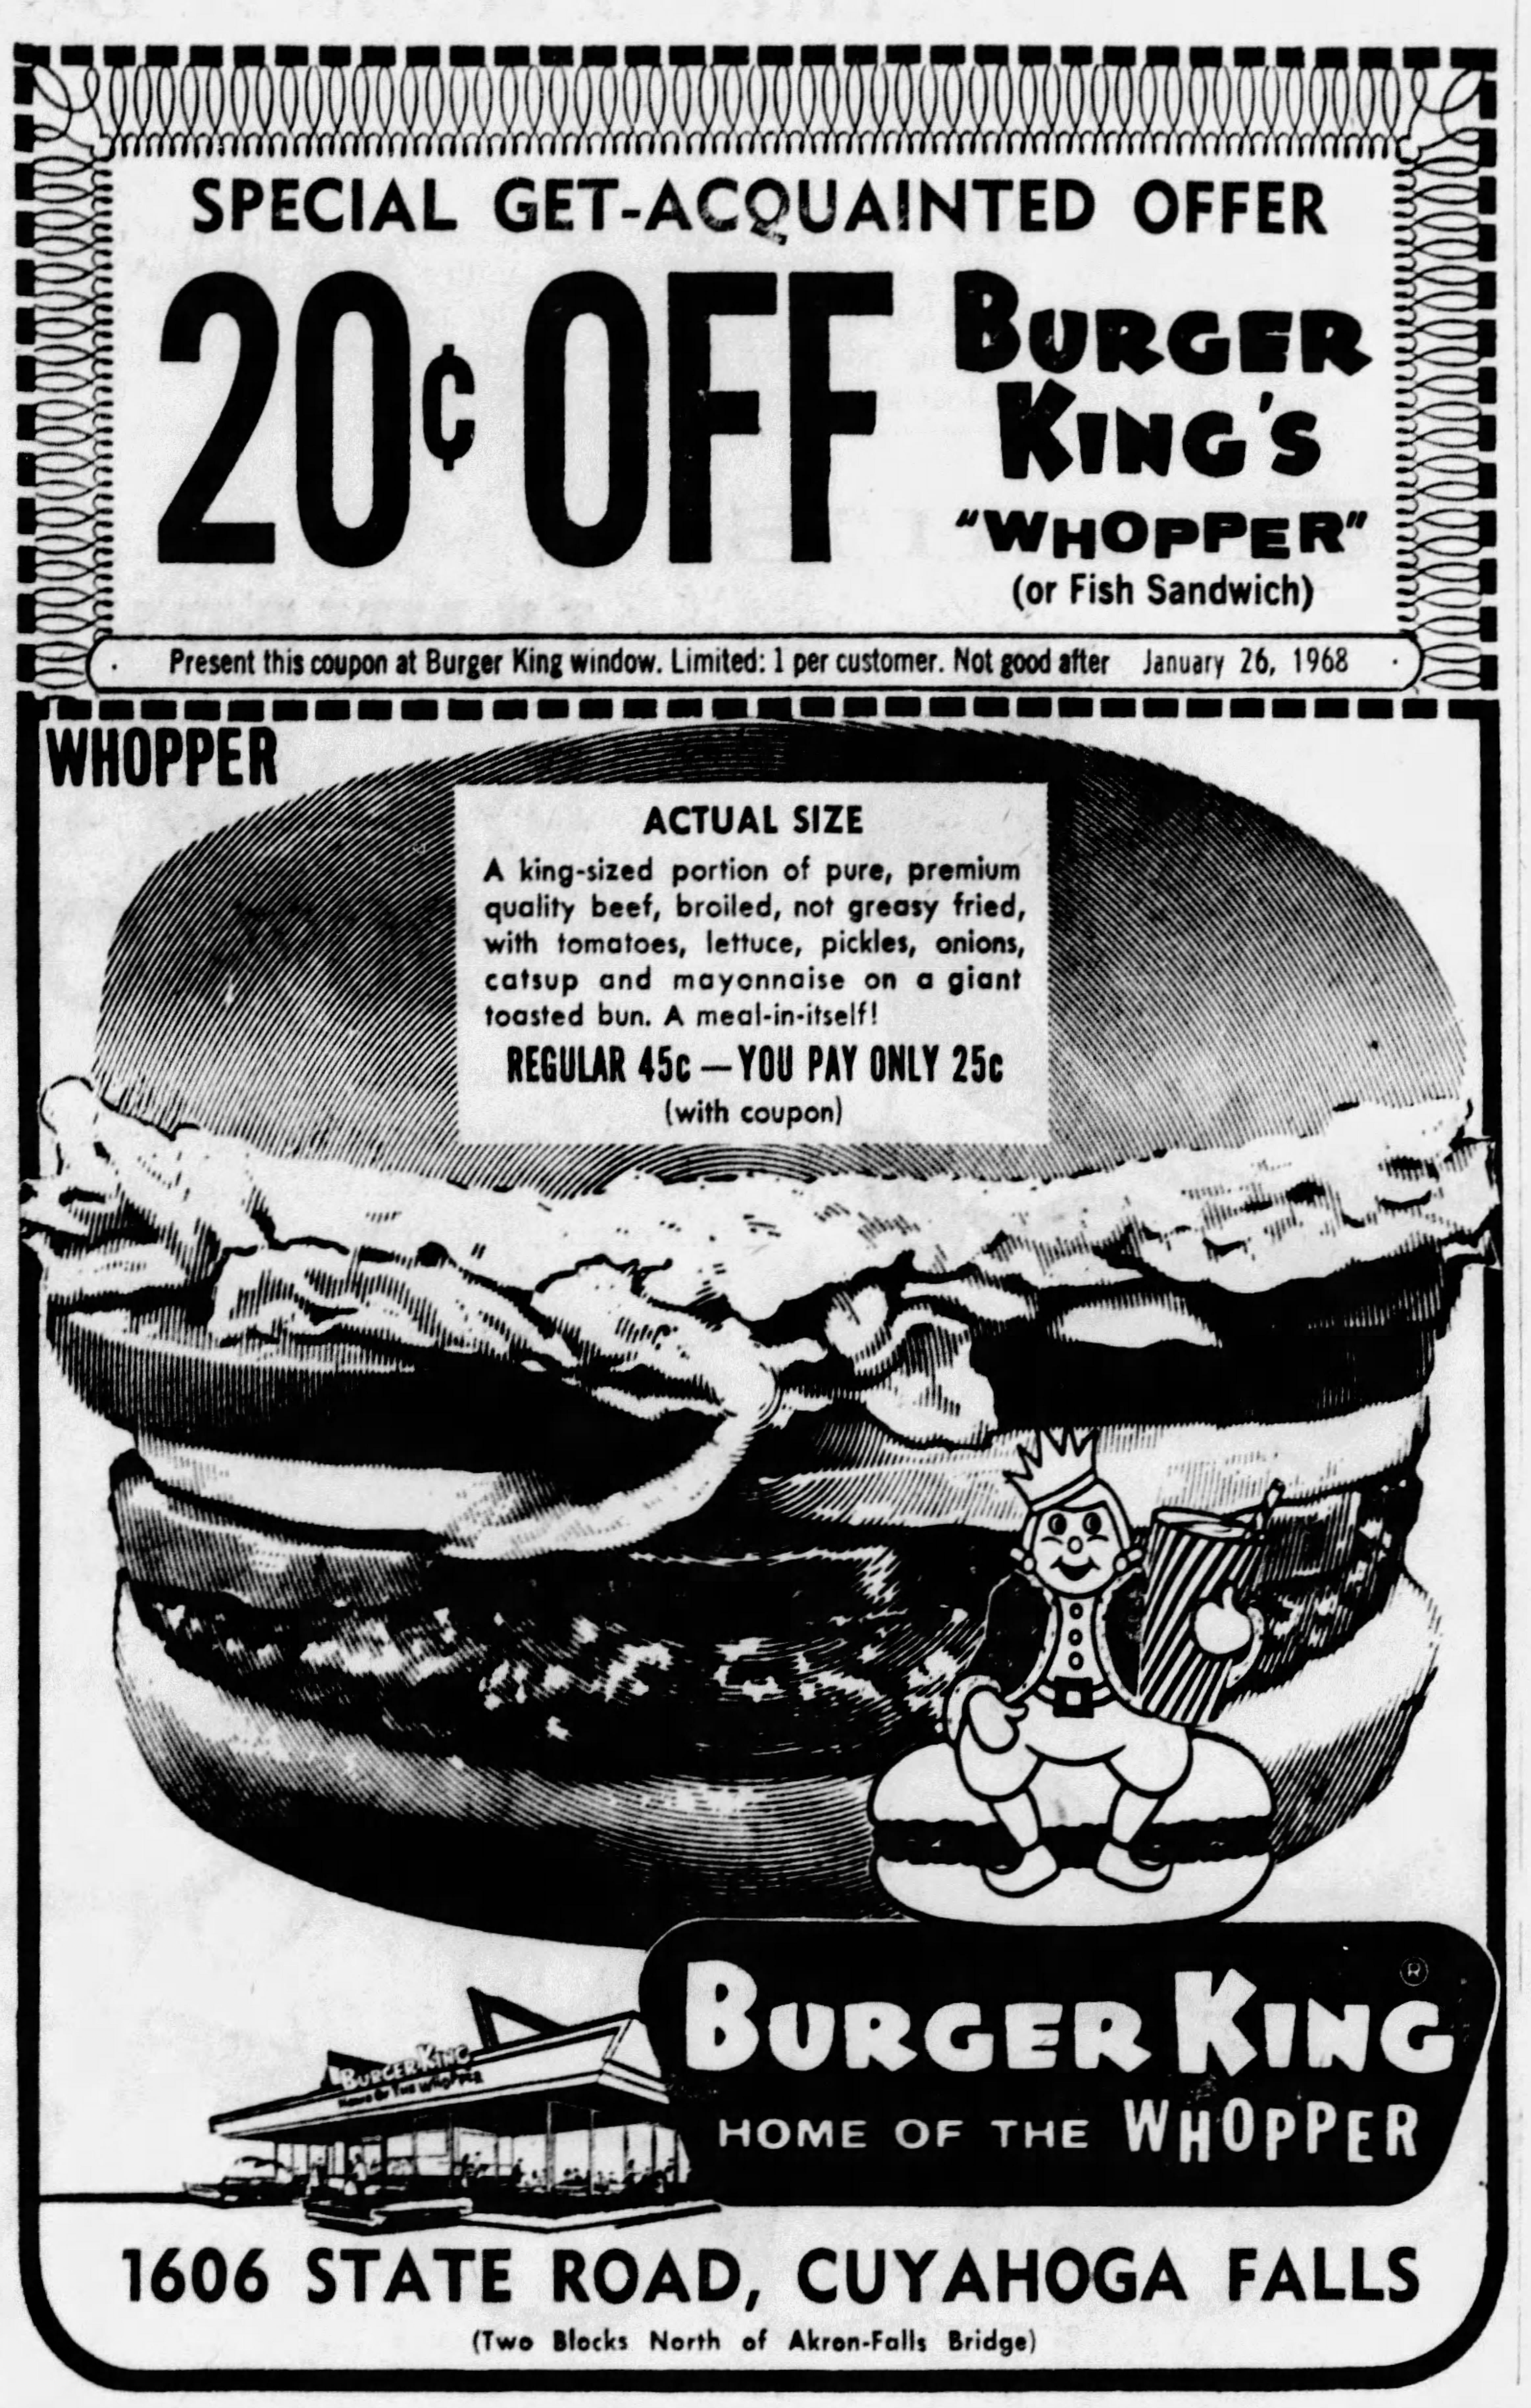 burger king menu prices 1970